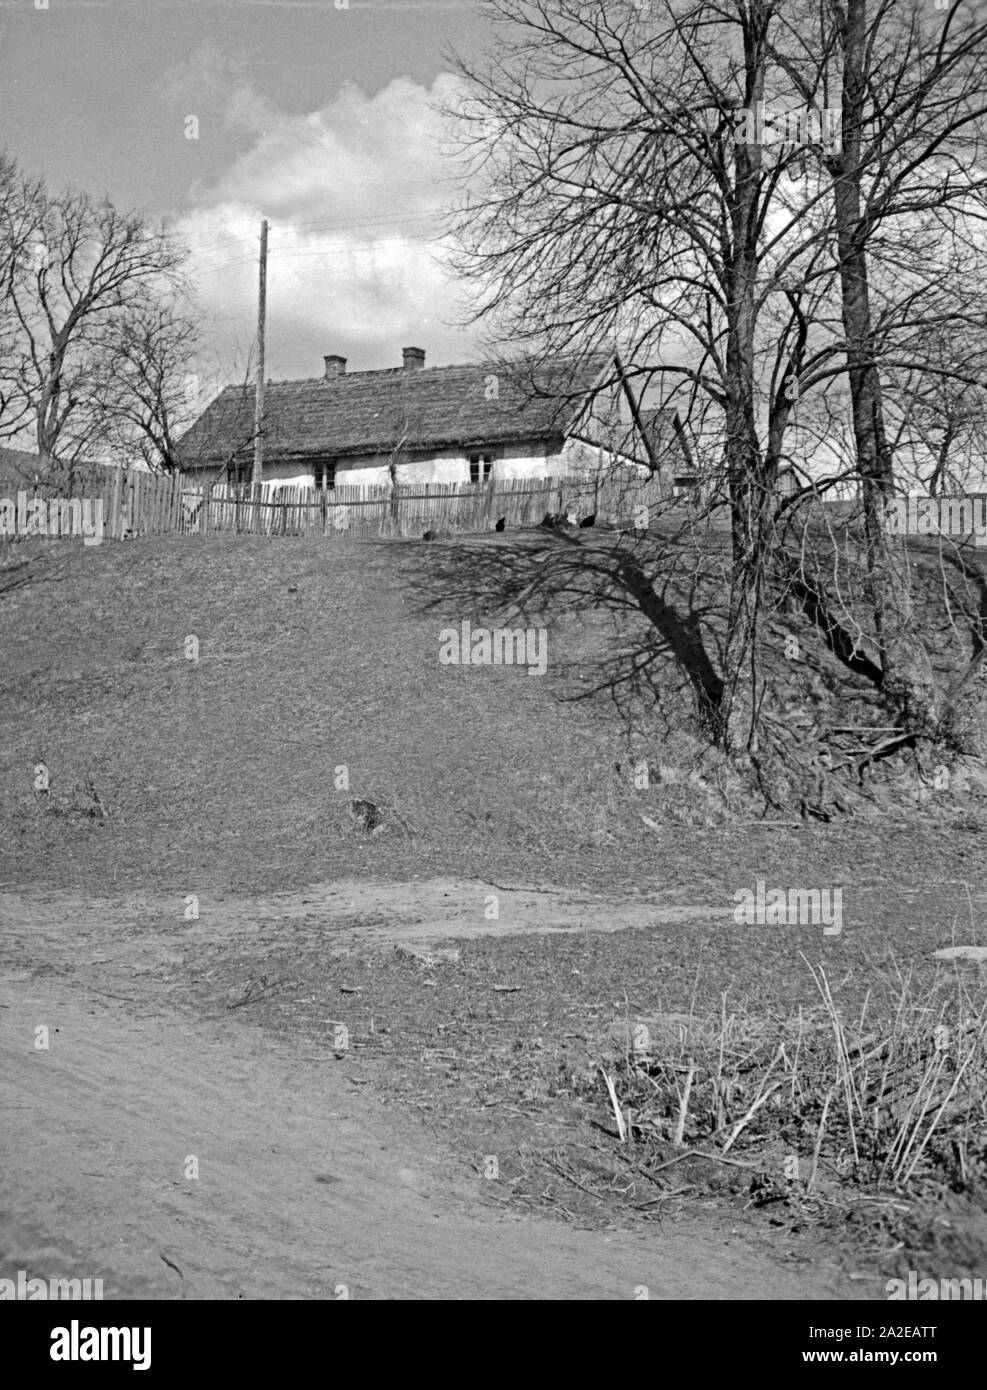 Ein Haus auf einer kleinen Anhöhe dans Masuren, Ostpreußen, années 30 er Jahre. Une ferme située sur une petite colline en Mazurie, la Prusse orientale, 1930. Banque D'Images